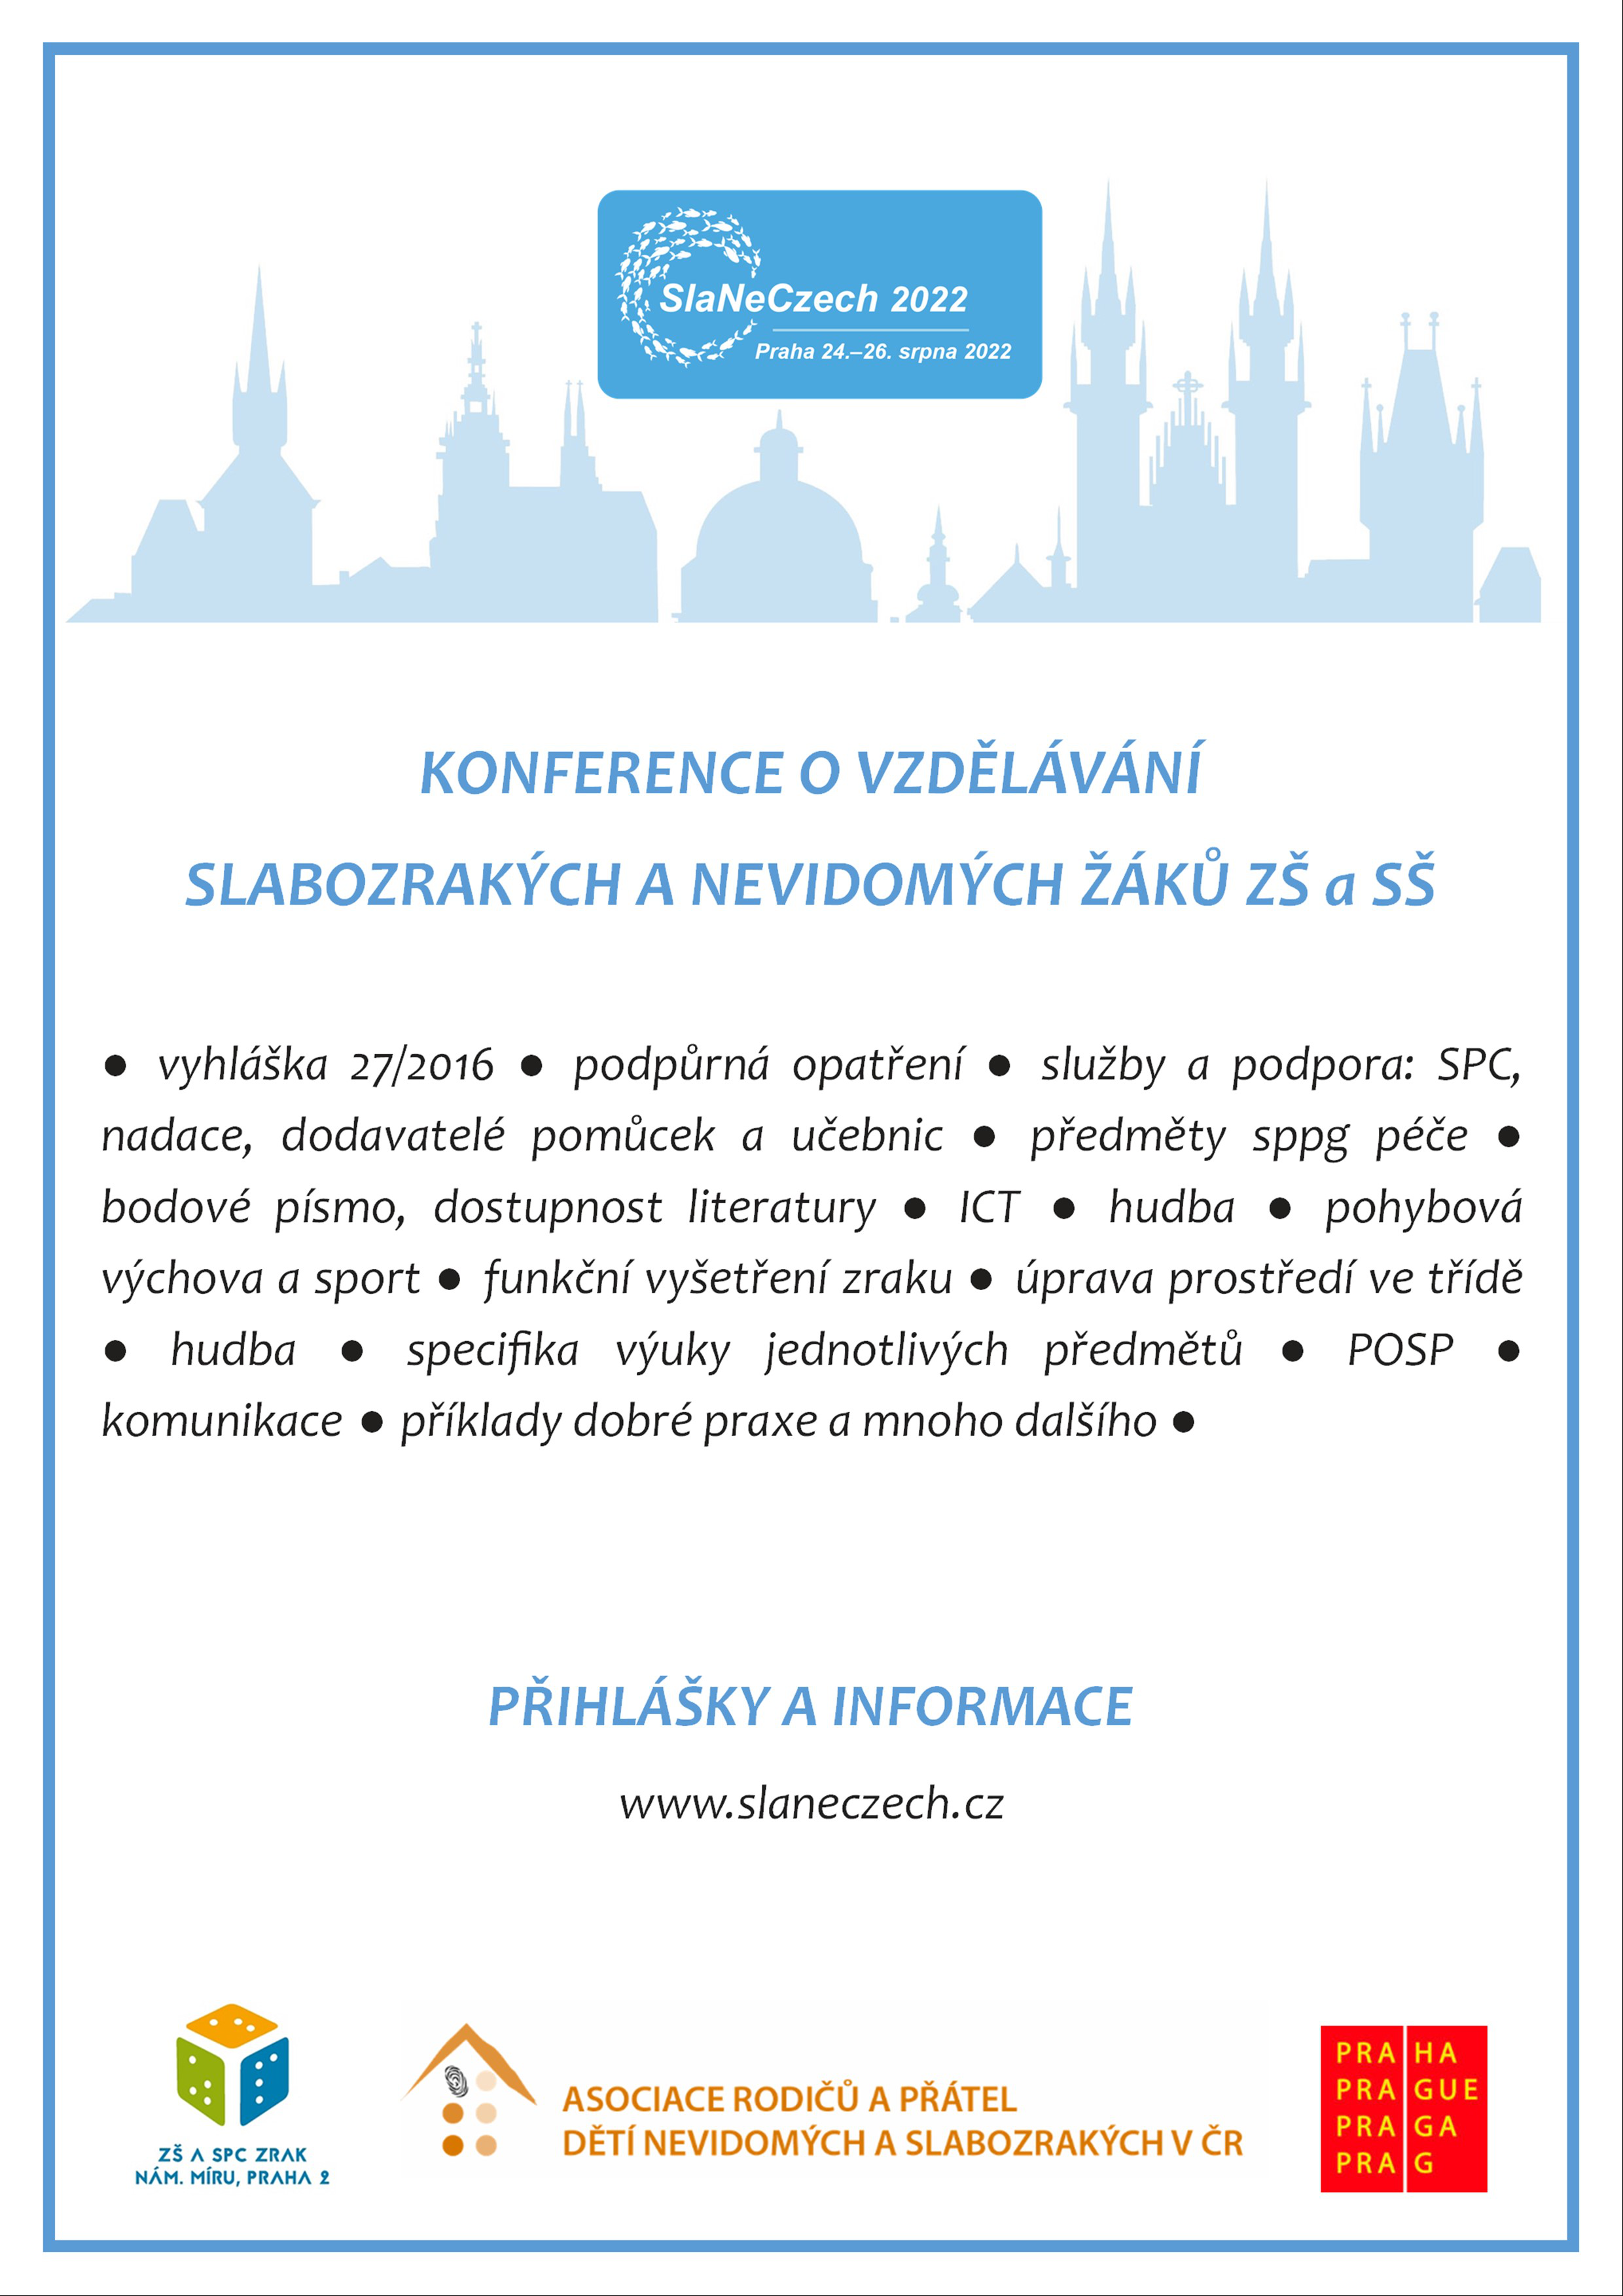 pozvanka-konference-slaneczech-2022.png